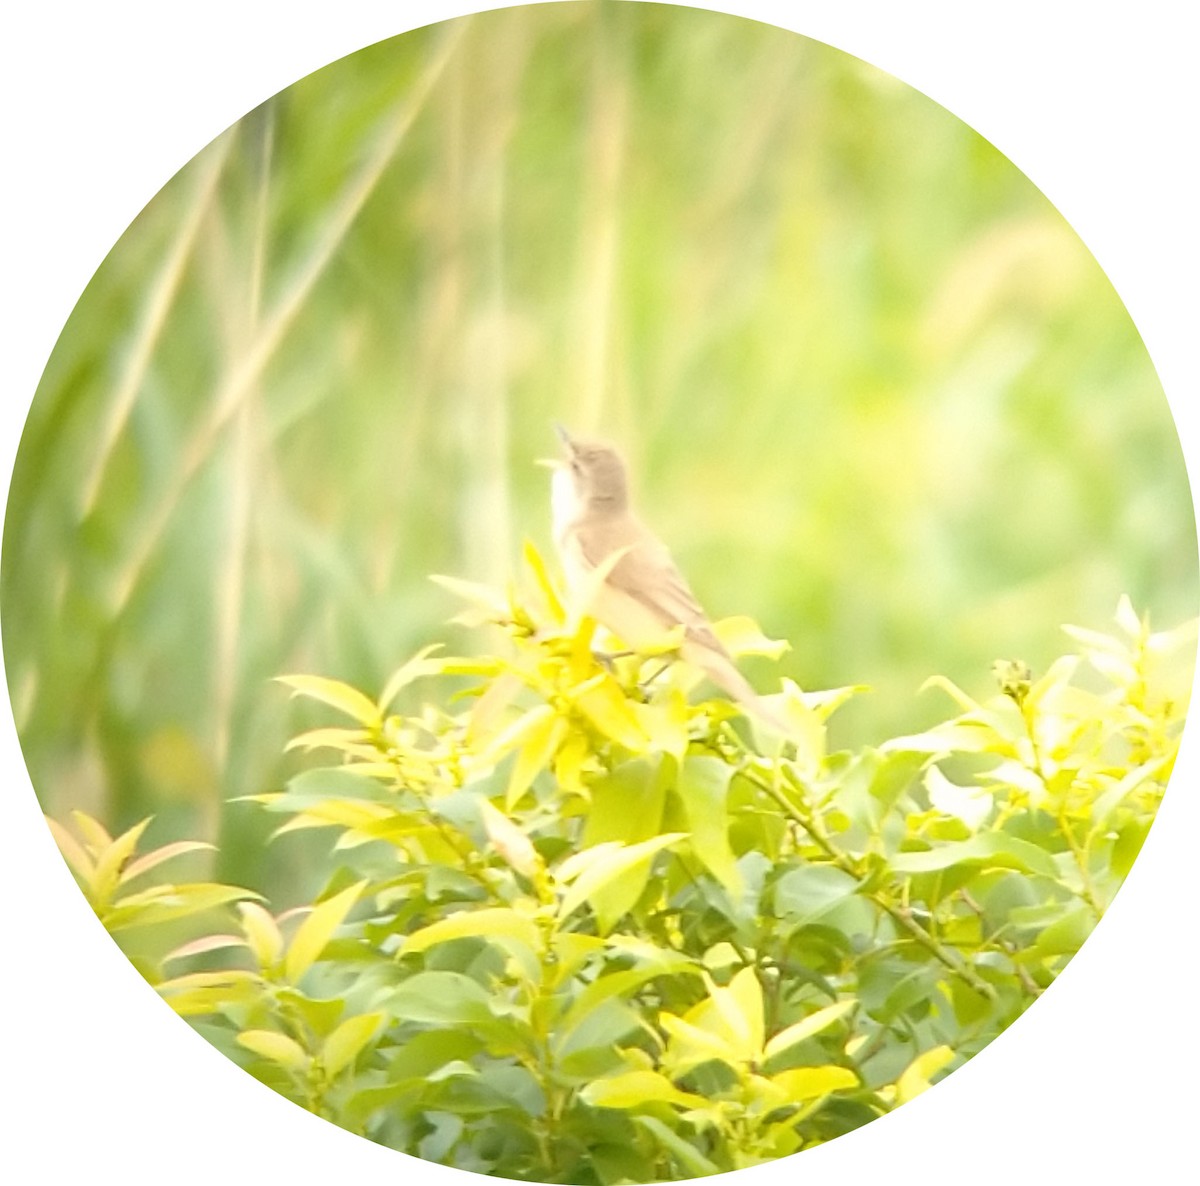 Oriental Reed Warbler - hisashi matsuda